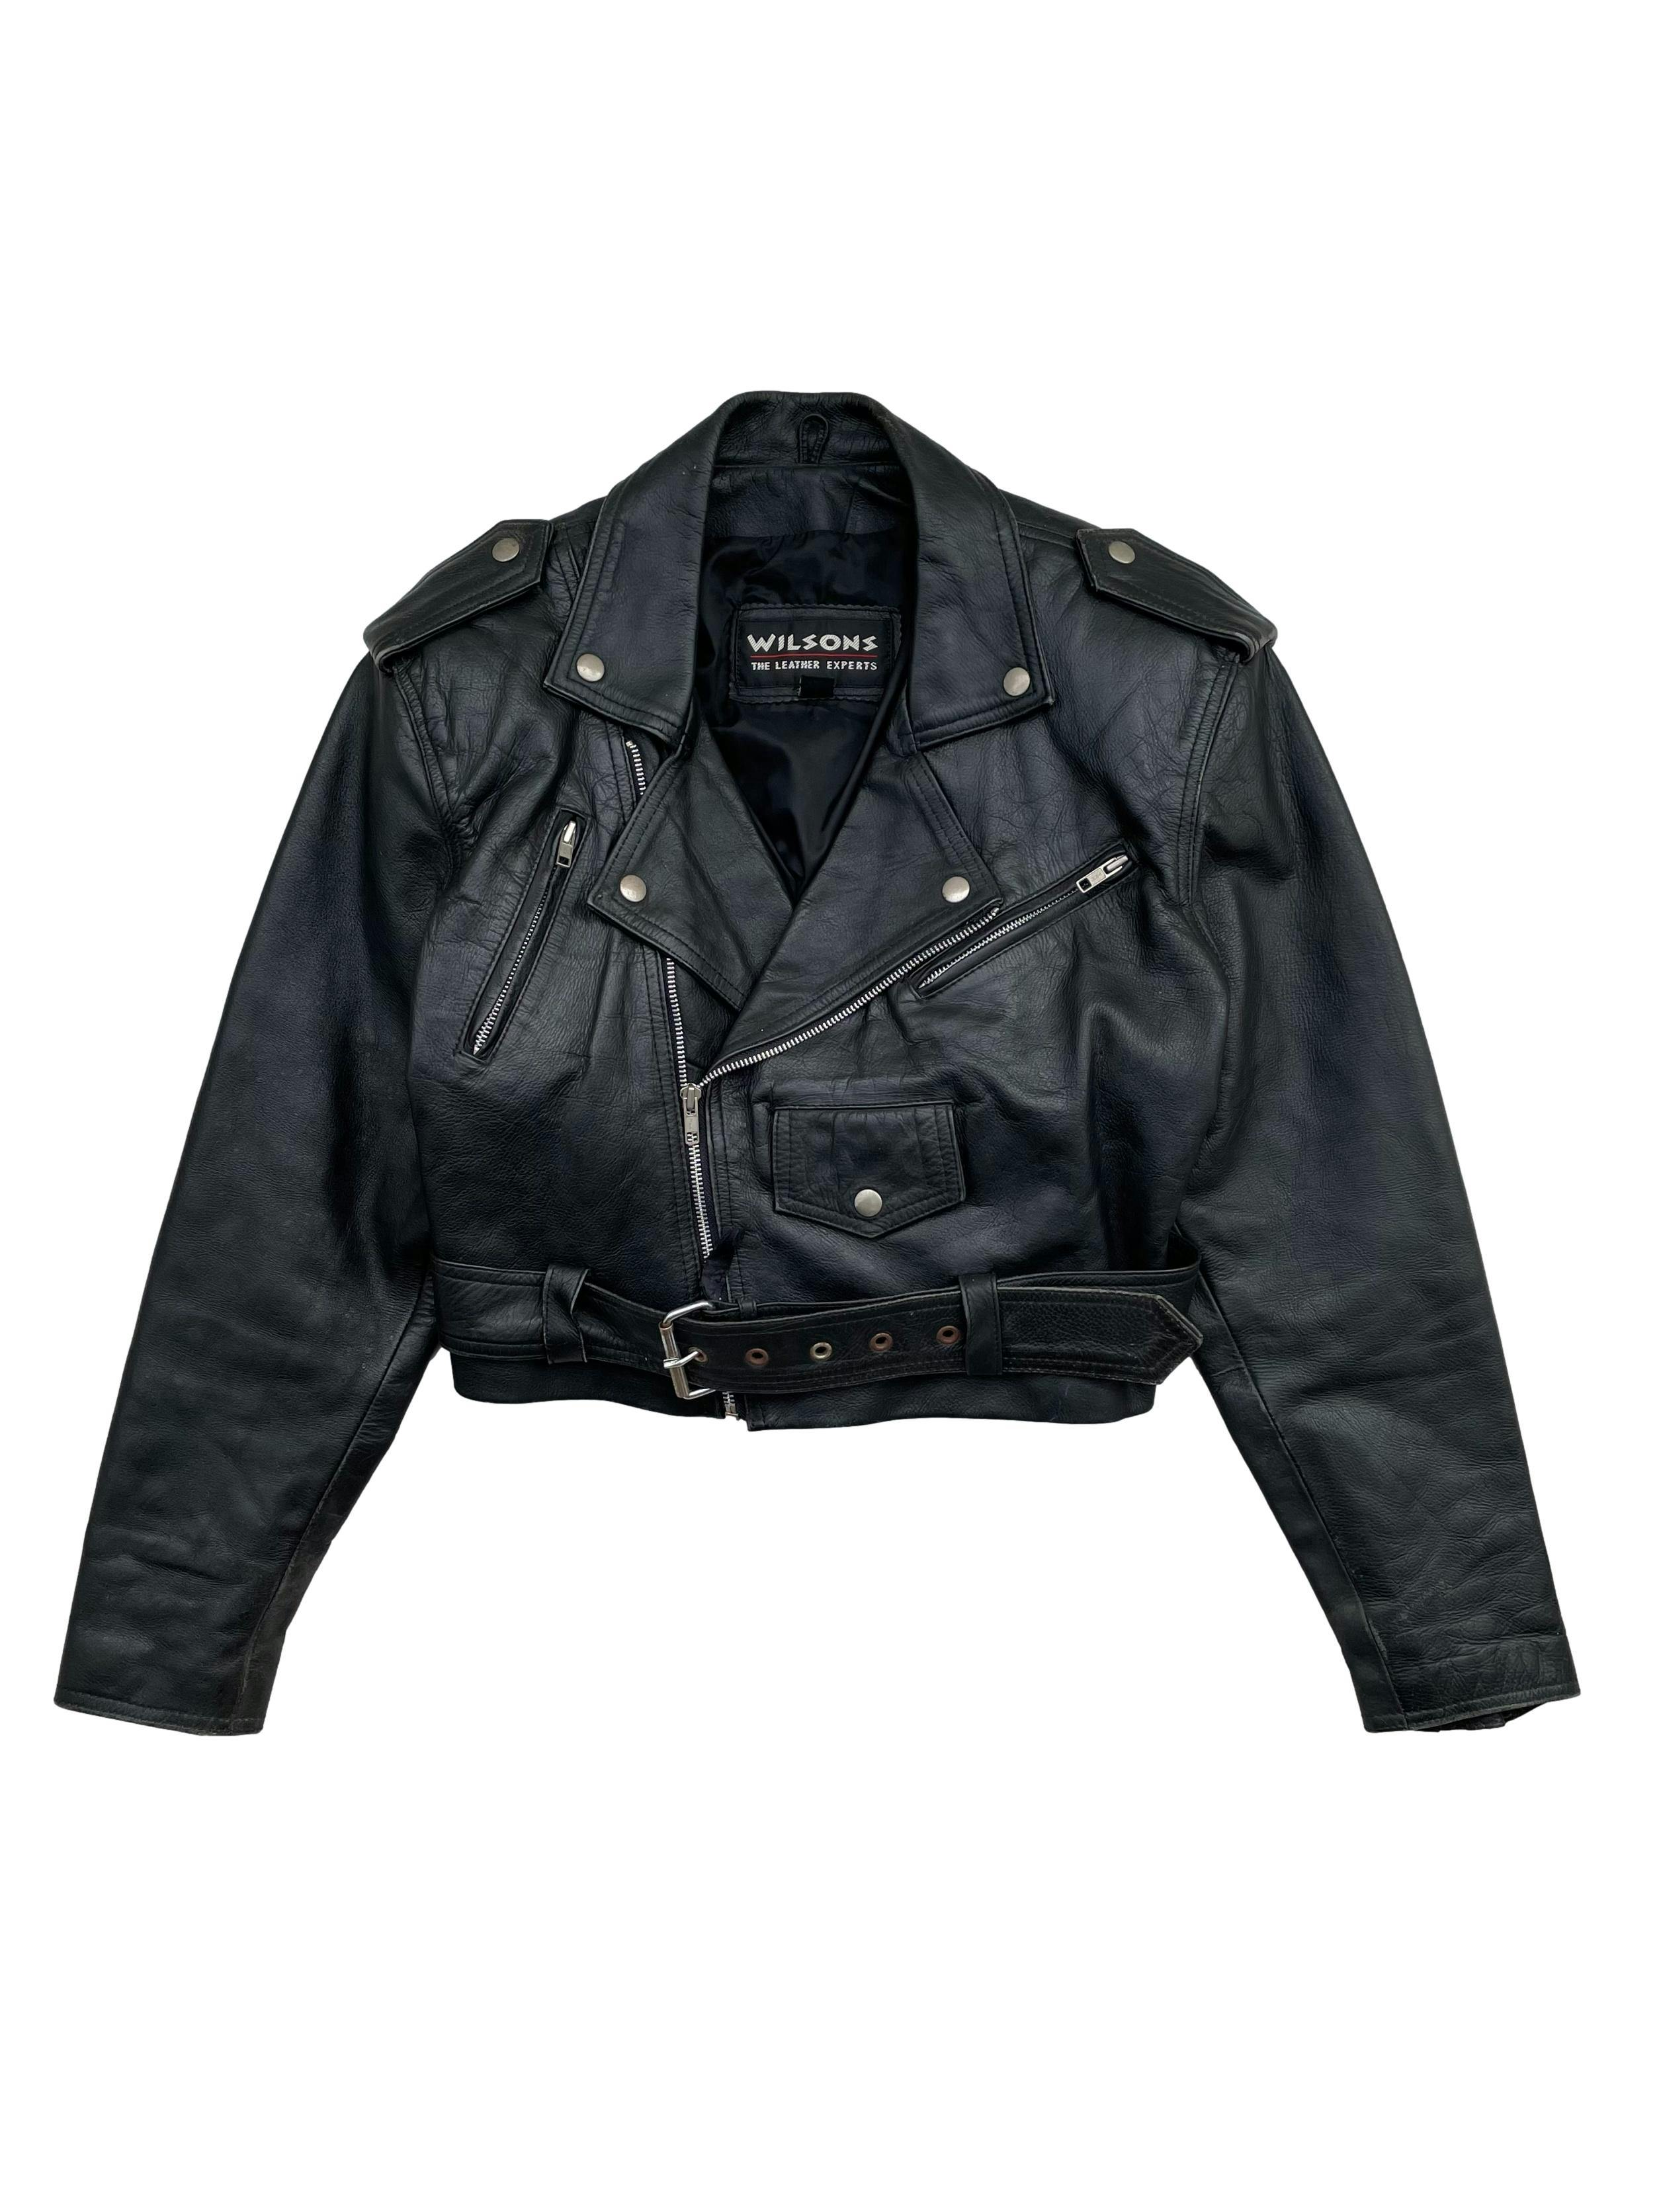 Biker jacket vintage 100% cuero negro, forrada y con hombreras. Busto 105cm Largo 45cm. Tienes signos de uso típicos de este tipo de pieza y oxido en algunos greviches. 